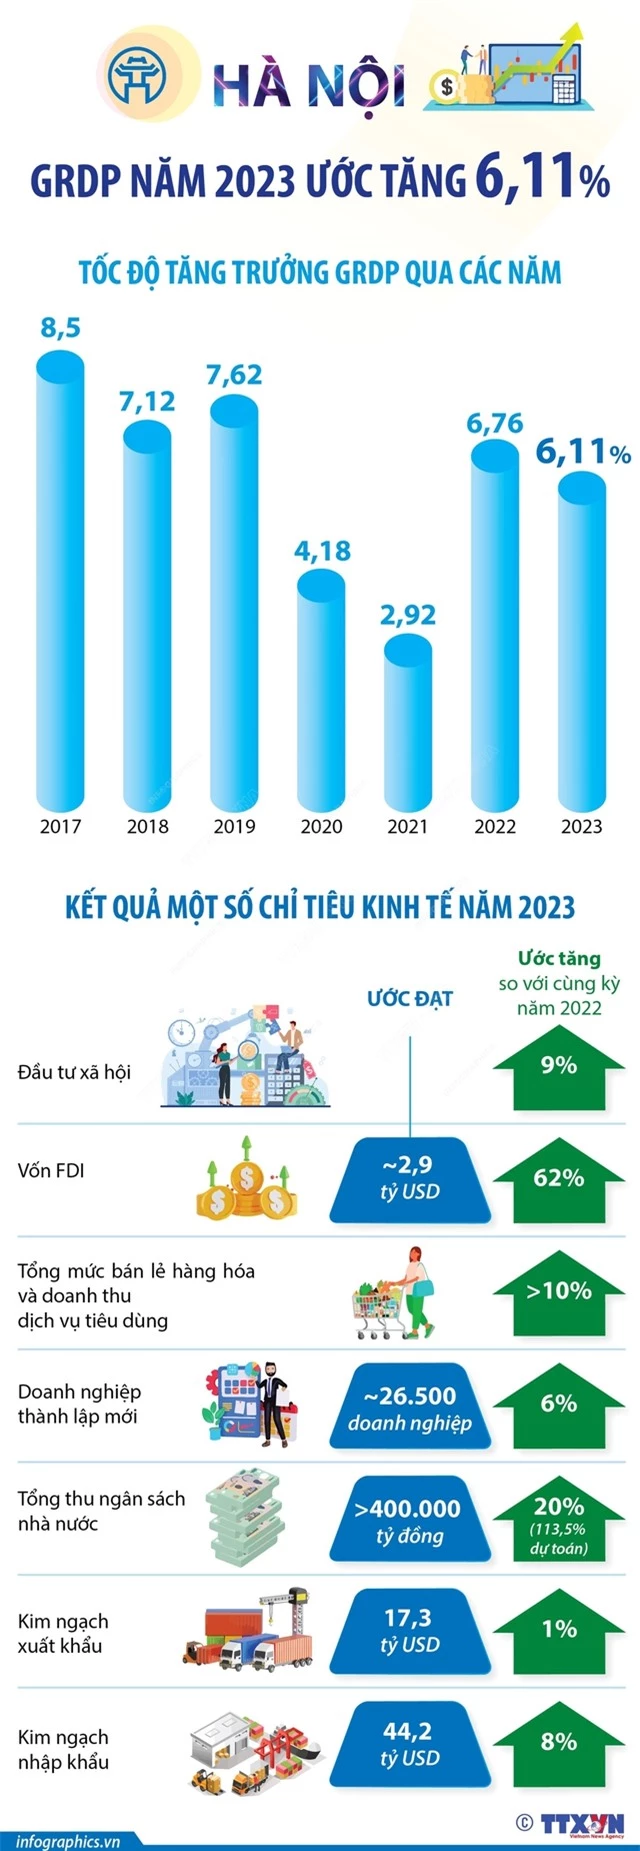 Hà Nội: GRDP năm 2023 ước tăng 6,11% - Ảnh 1.